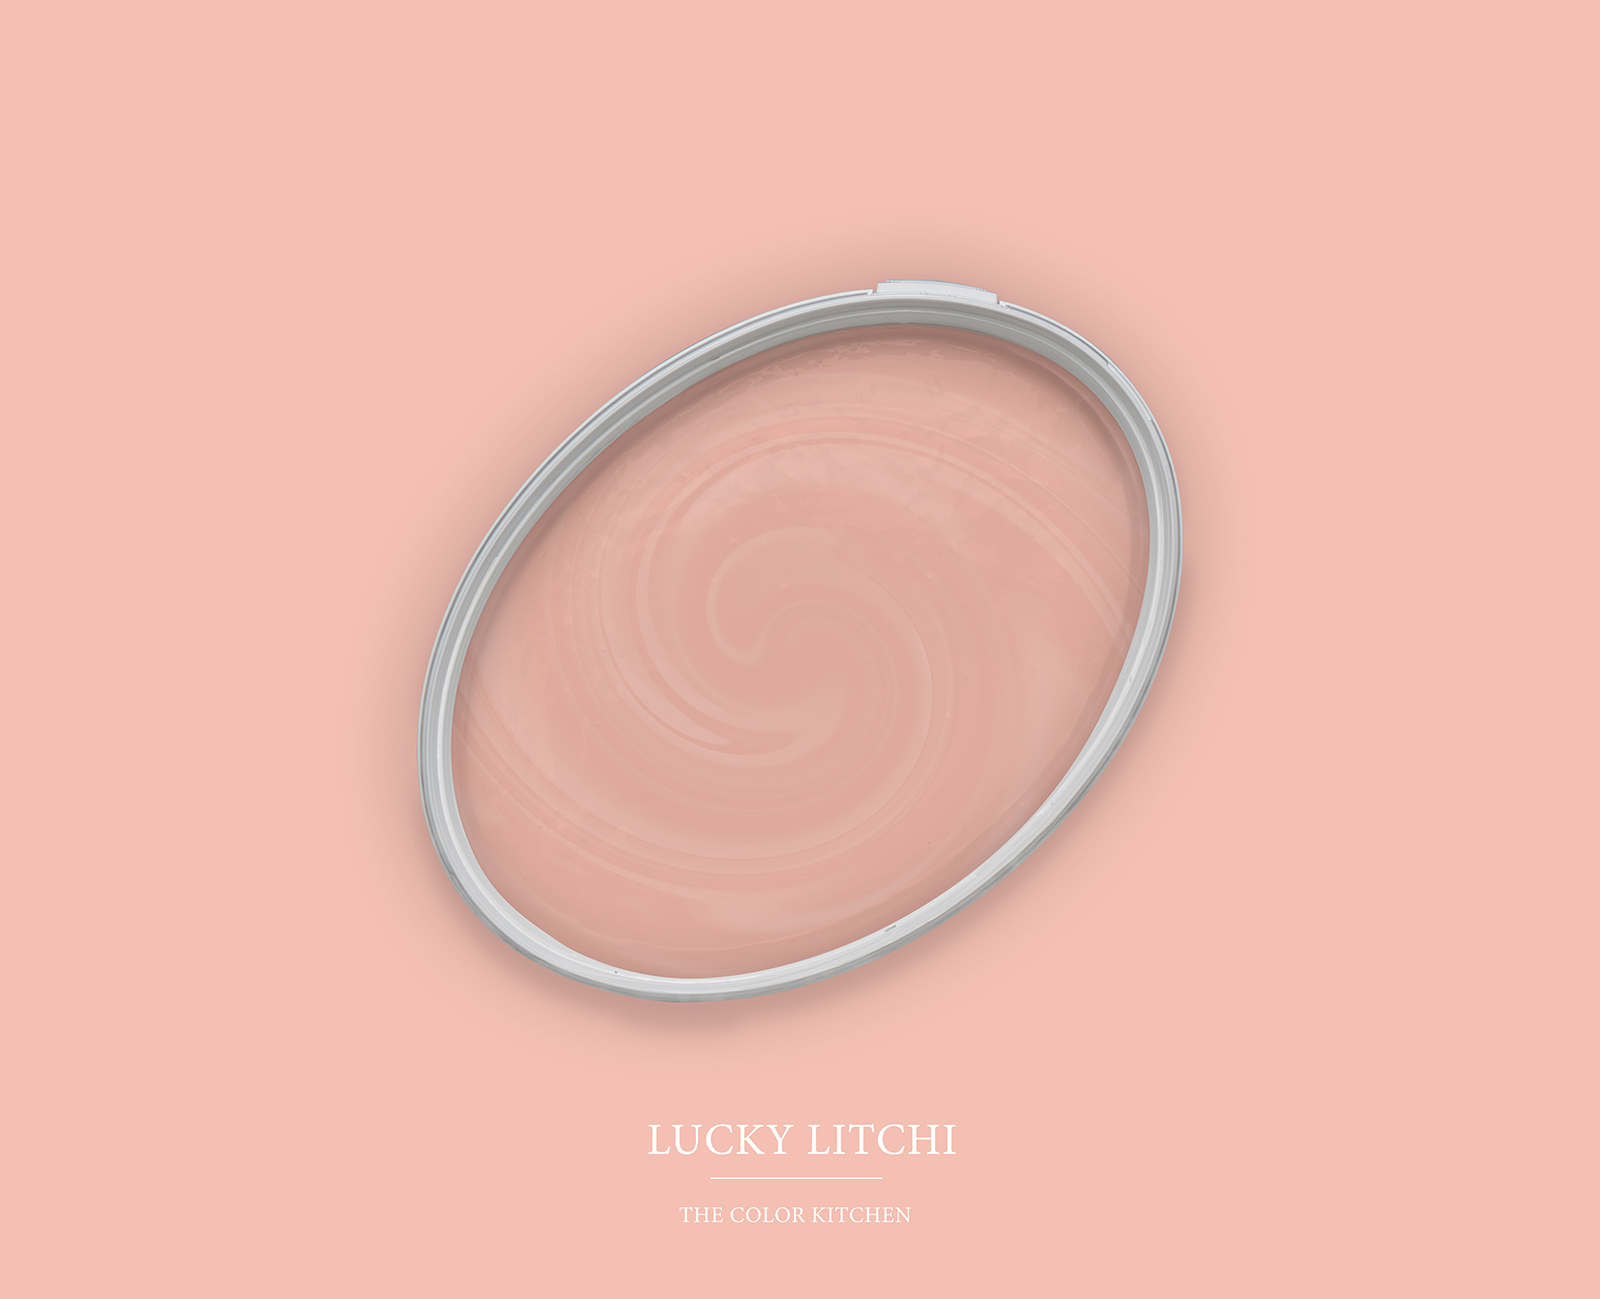 Pittura murale TCK7003 »Lucky Litchi« in rosa chiaro – 5,0 litri
